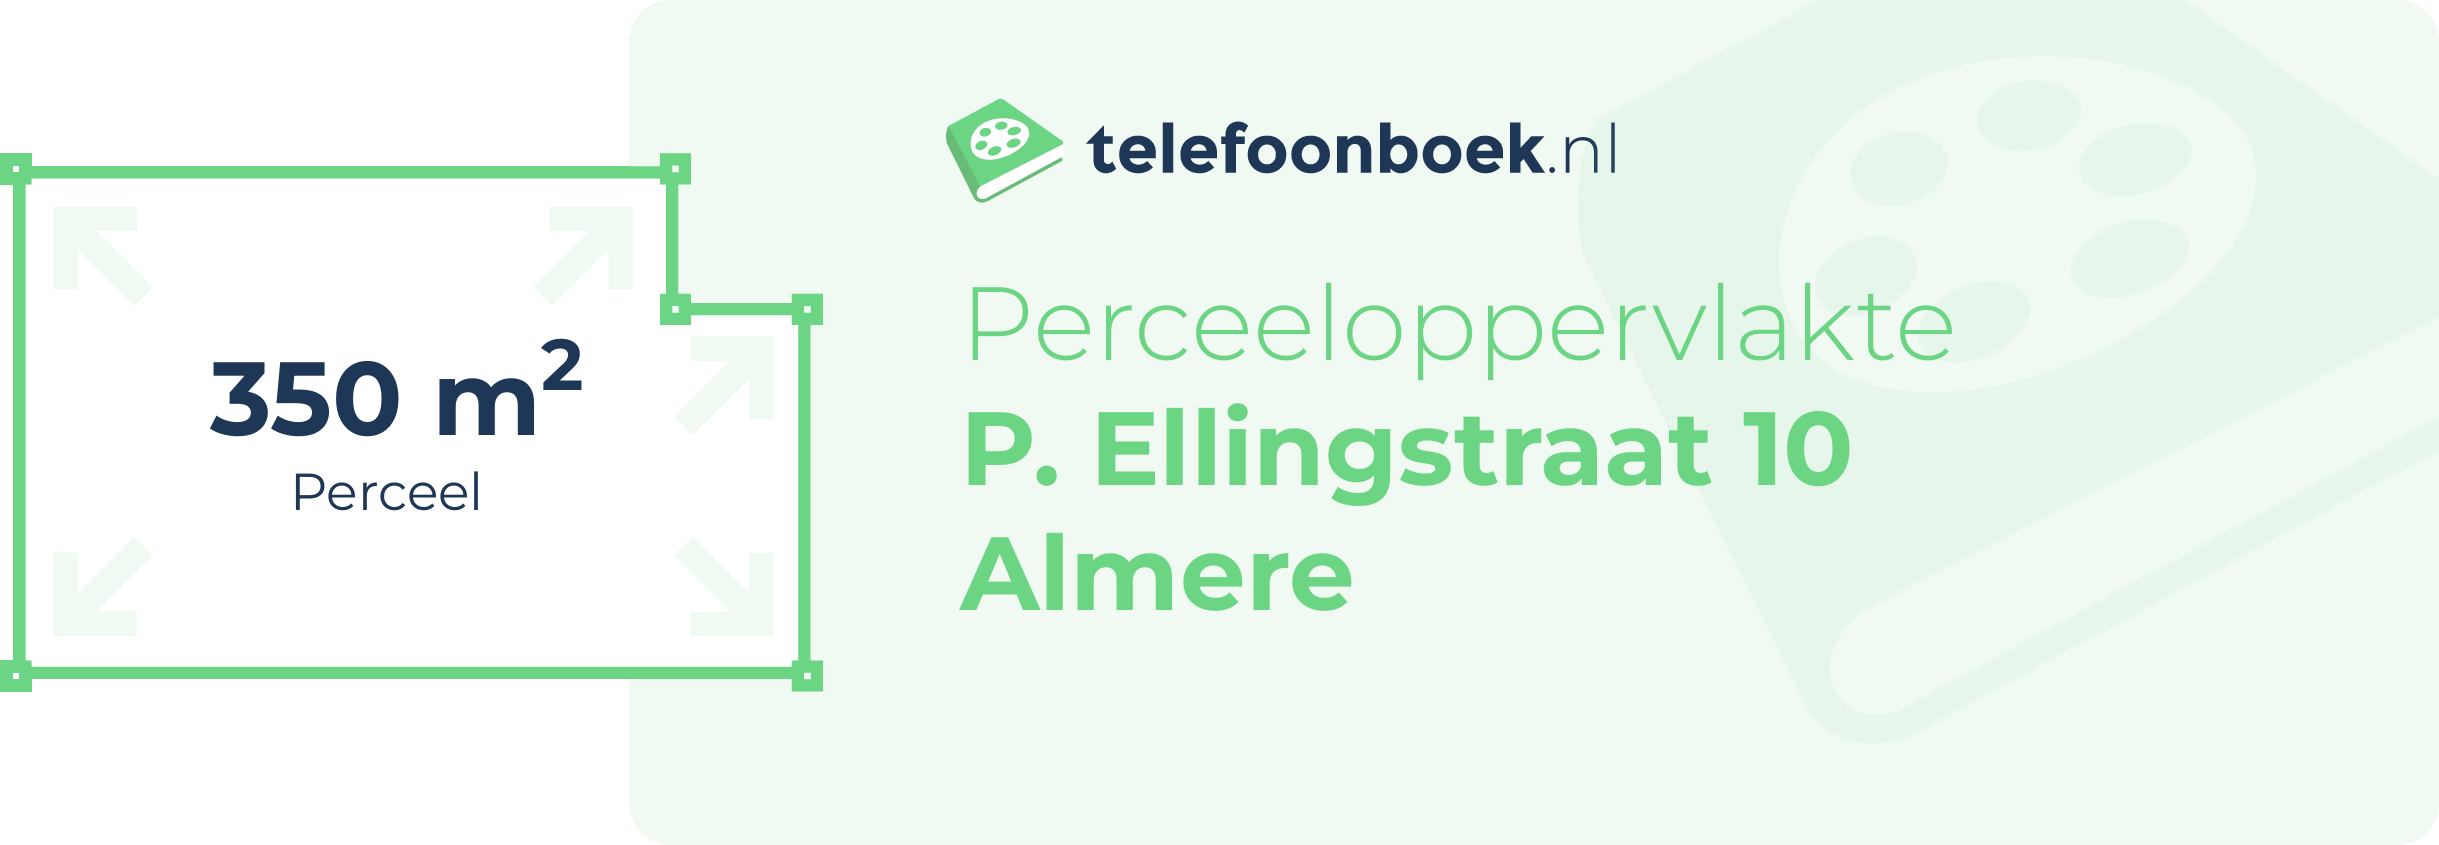 Perceeloppervlakte P. Ellingstraat 10 Almere